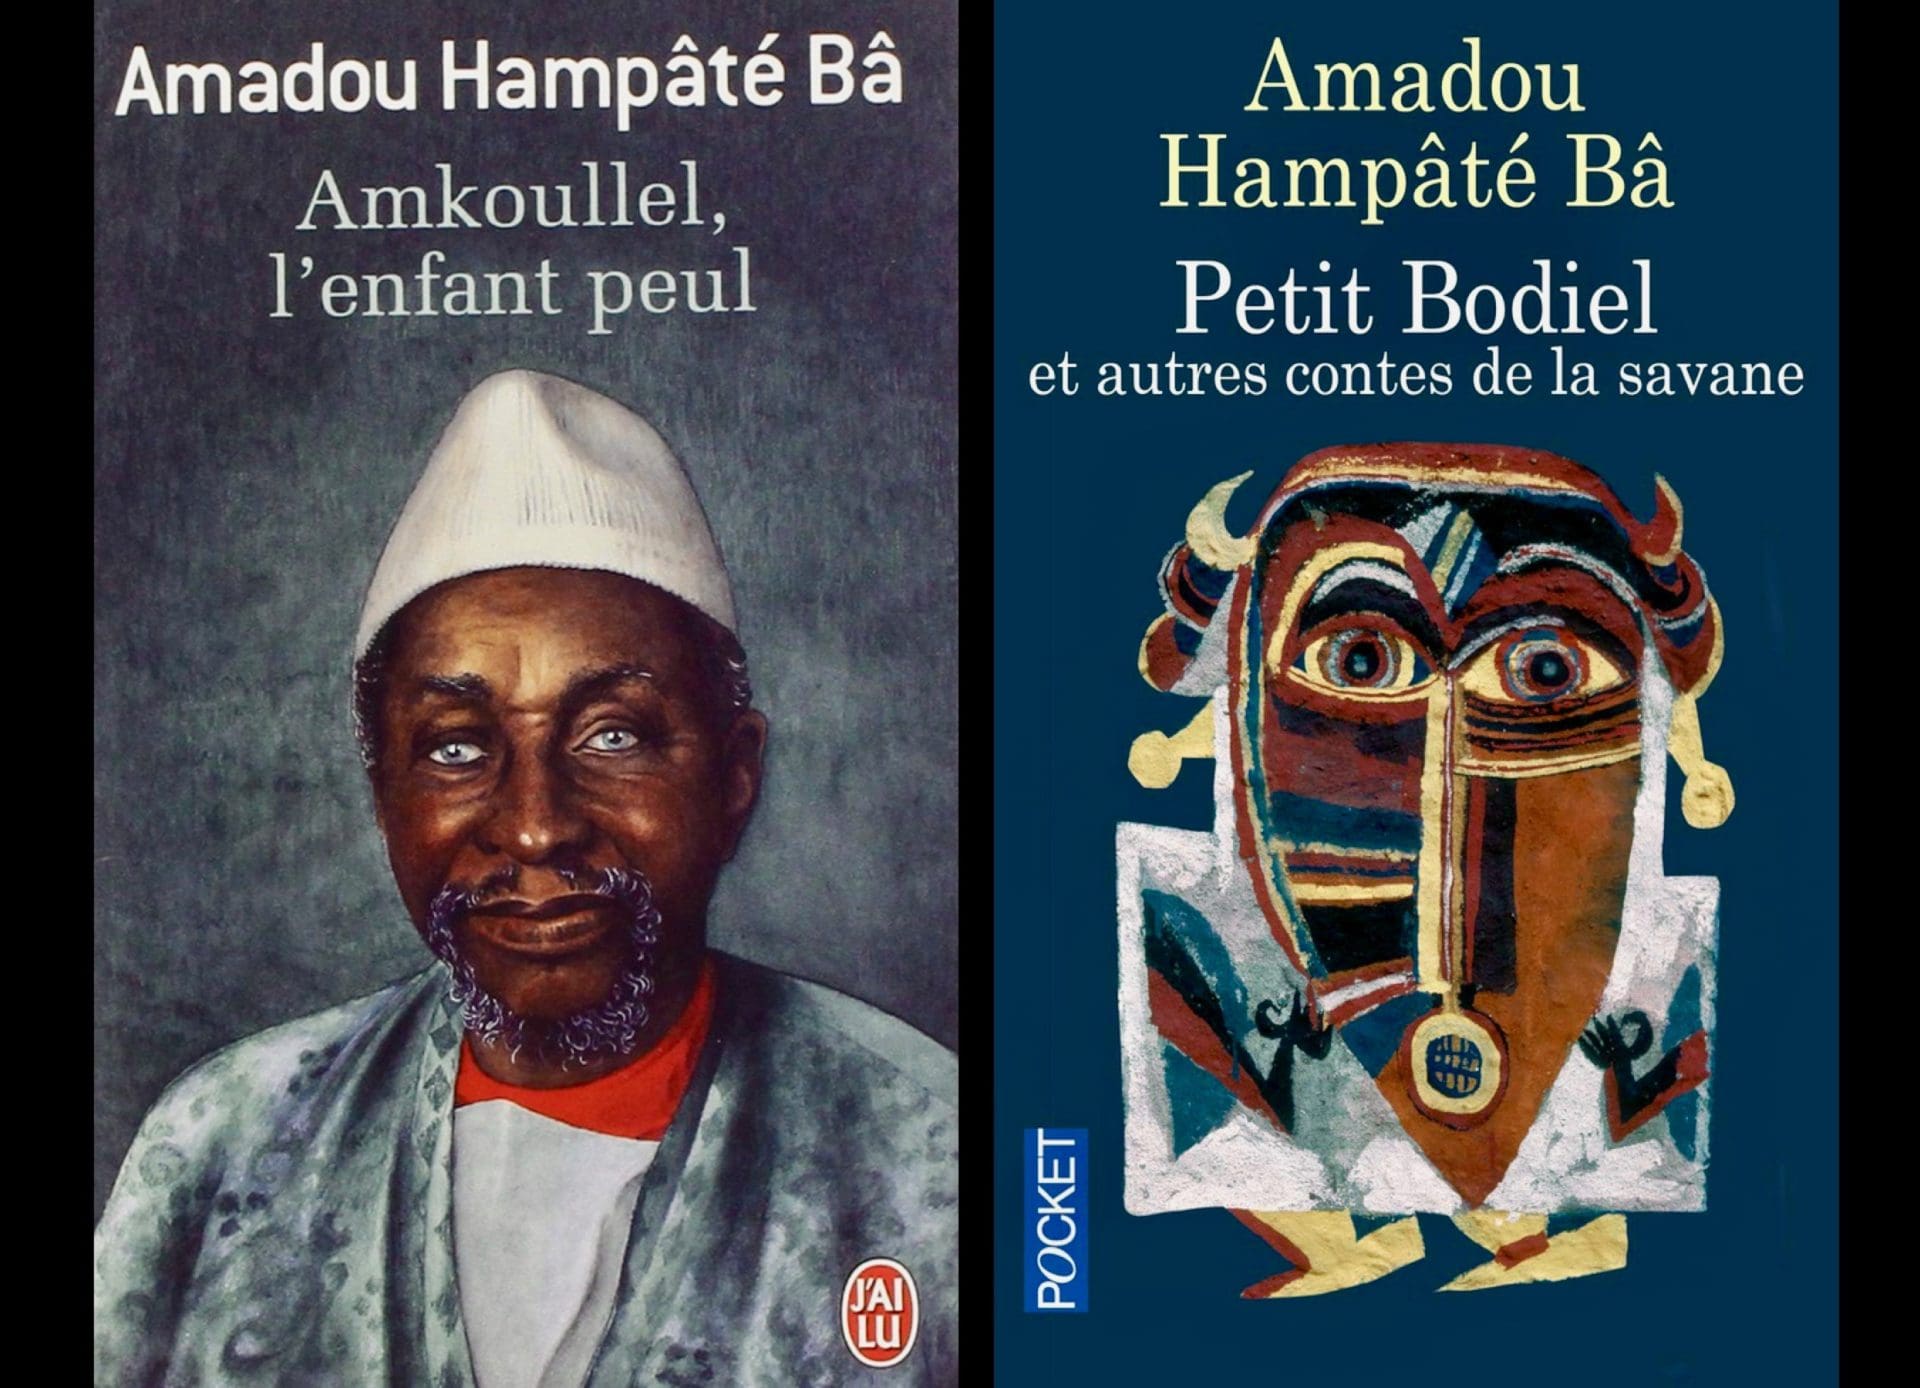 Amadou Hampâté Bâ © droits réservés